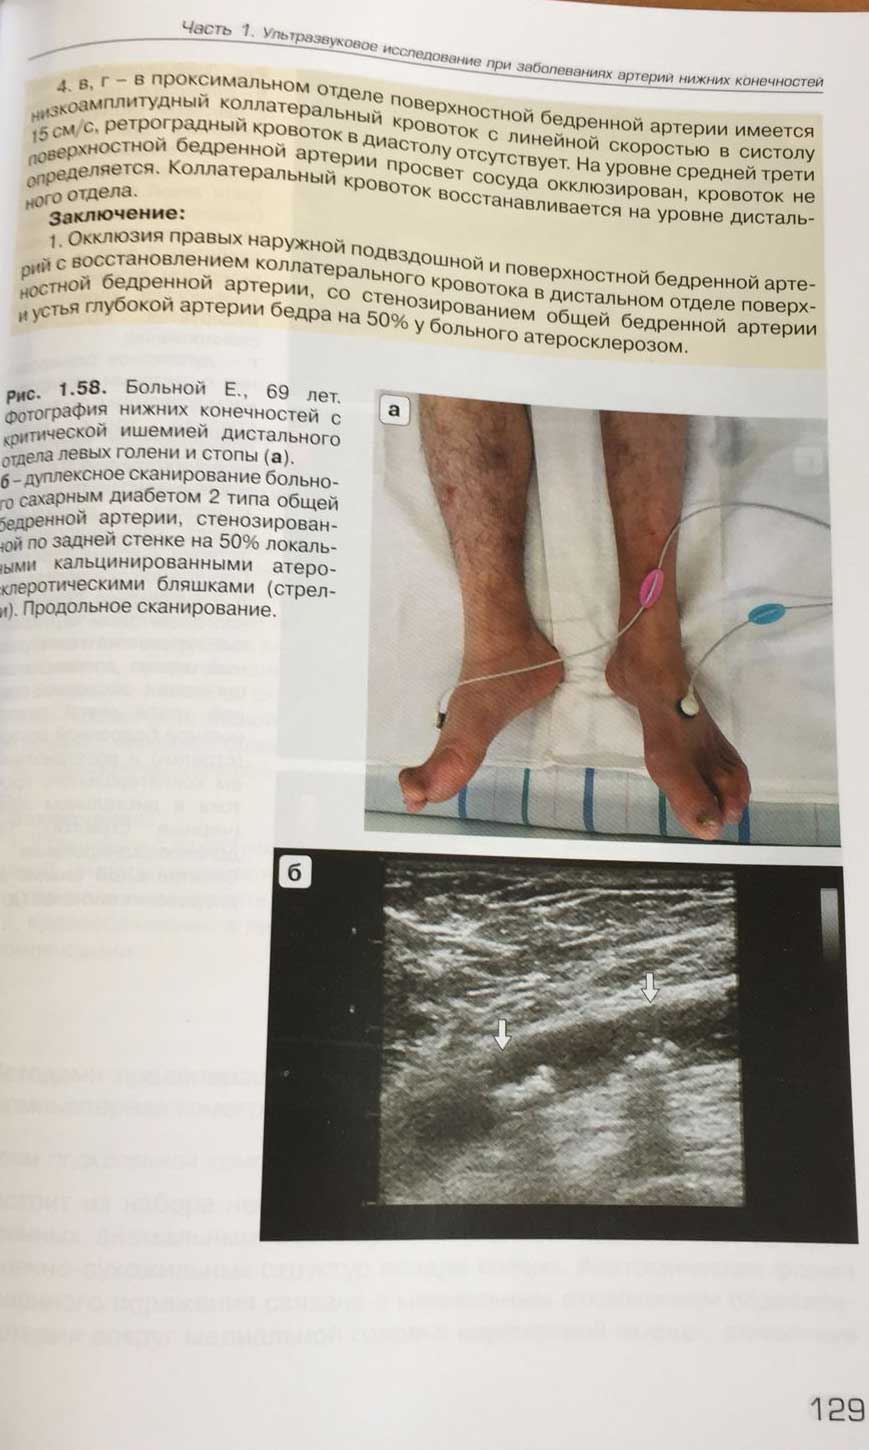 Пример страницы из книги "Ультразвуковое исследование при заболеваниях артерий и вен нижних конечностей"